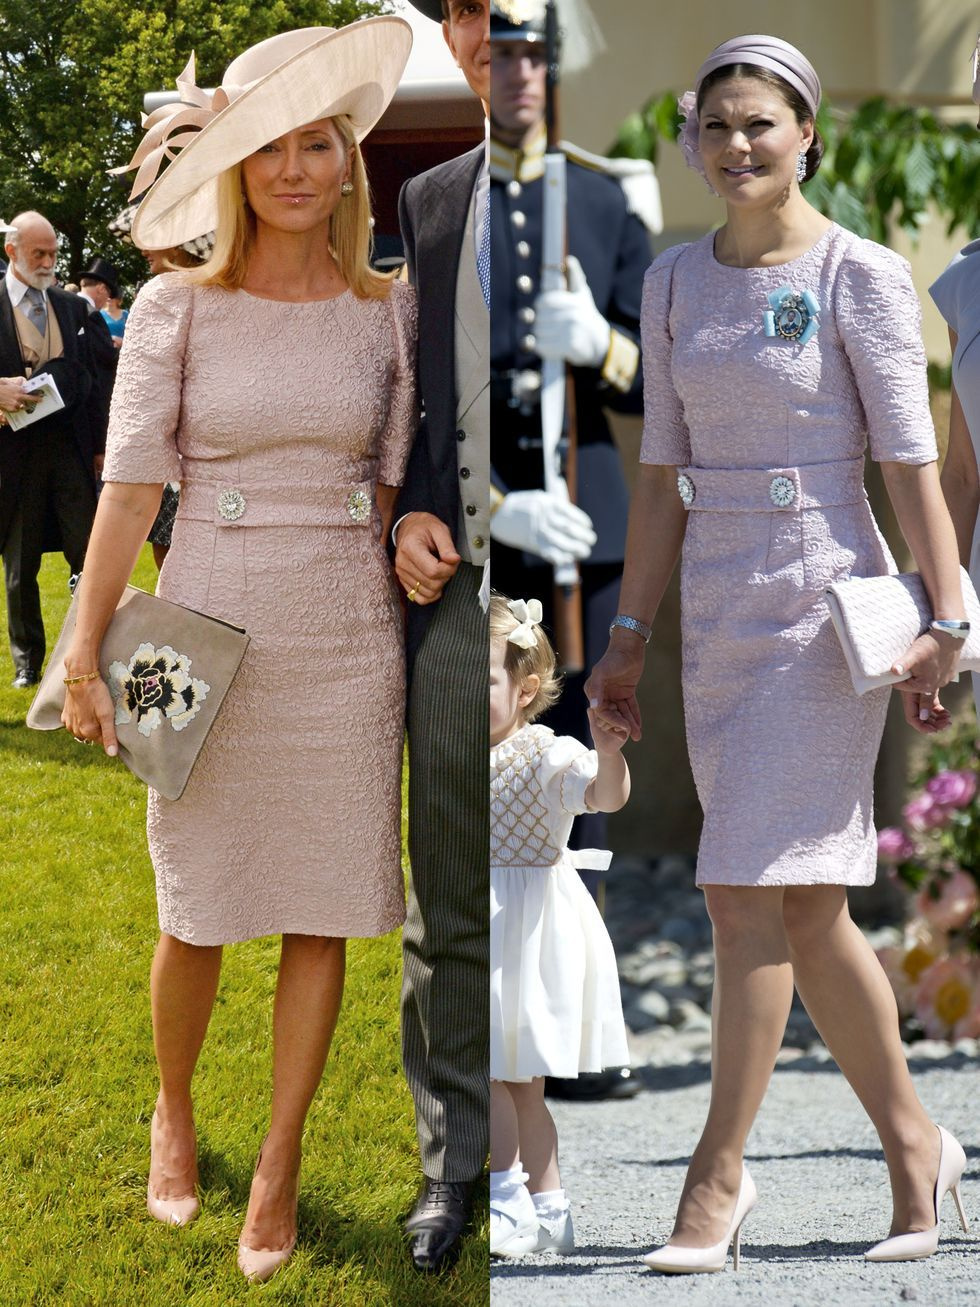 Řecká korunní princezna Marie-Chantal si na Derby Day&nbsp;v Anglii oblékla růžové šaty Dolce&amp;Gabbana s výraznými knoflíky. Jen o několik dní později zvolila totožné šaty také švédská korunní princezna Victoria, a to na křest princezny Leonore.
